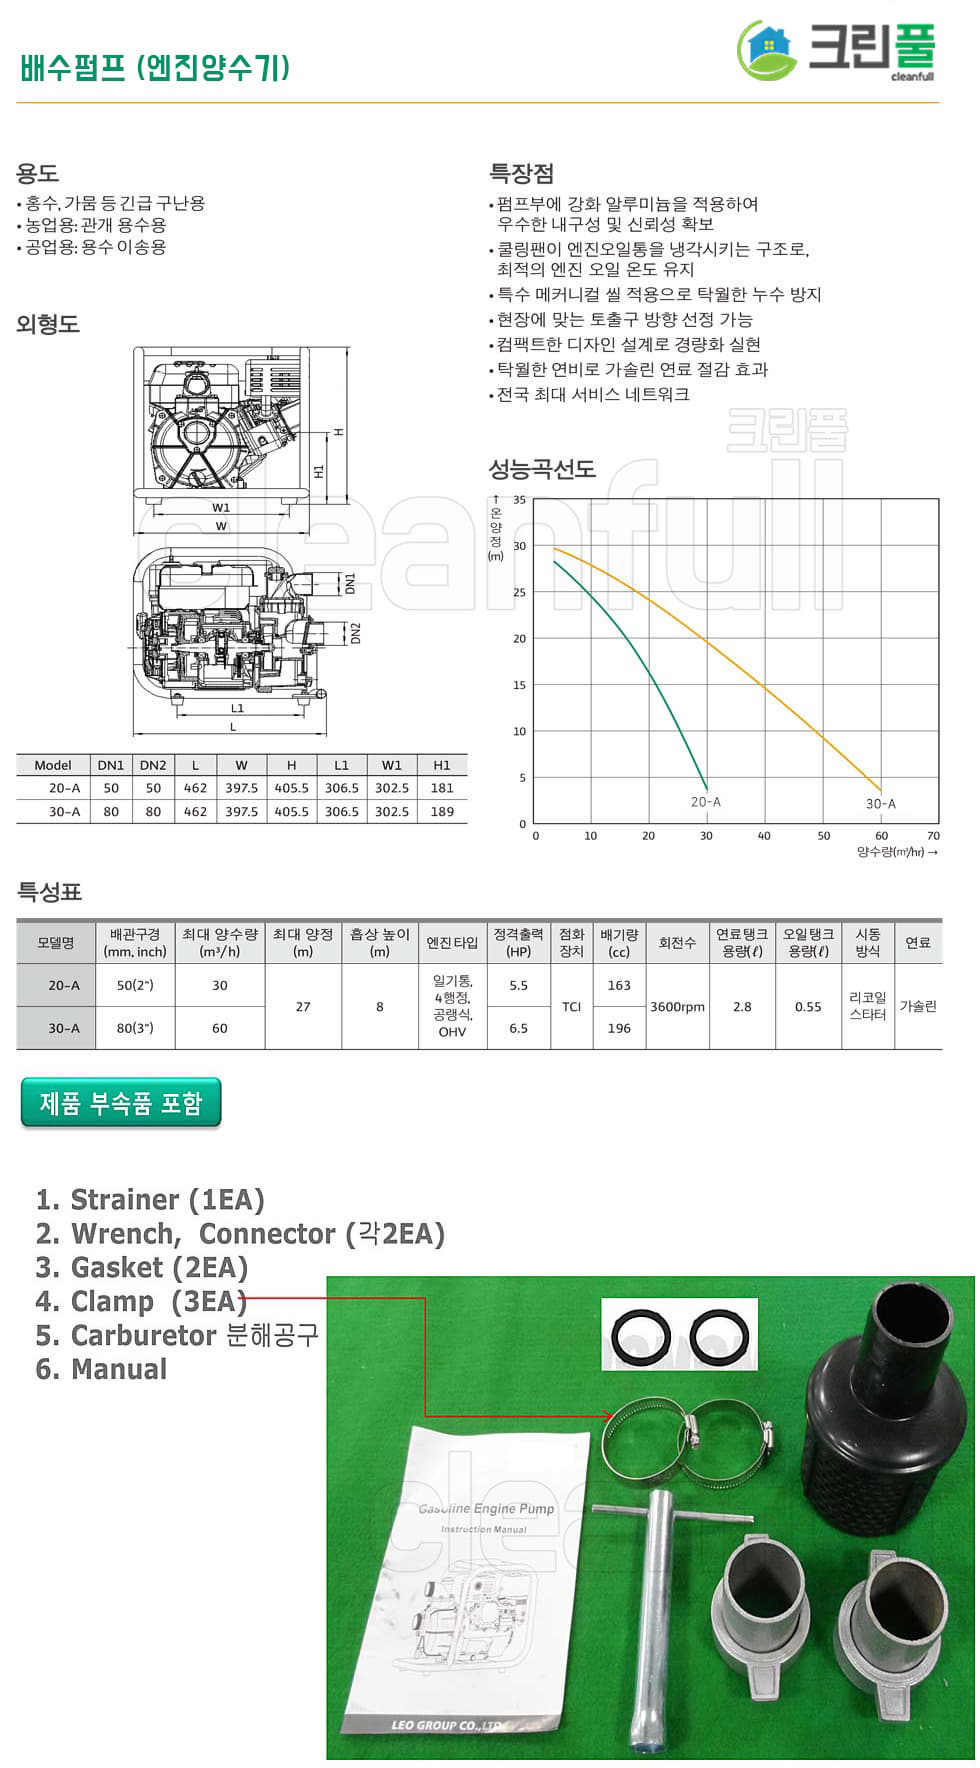 배수펌프 6.5마력 80A GP30-A(80A 6.5HP) 엔진양수기_저수조청소업 신고 허가장비-배수펌프 5마력 이상